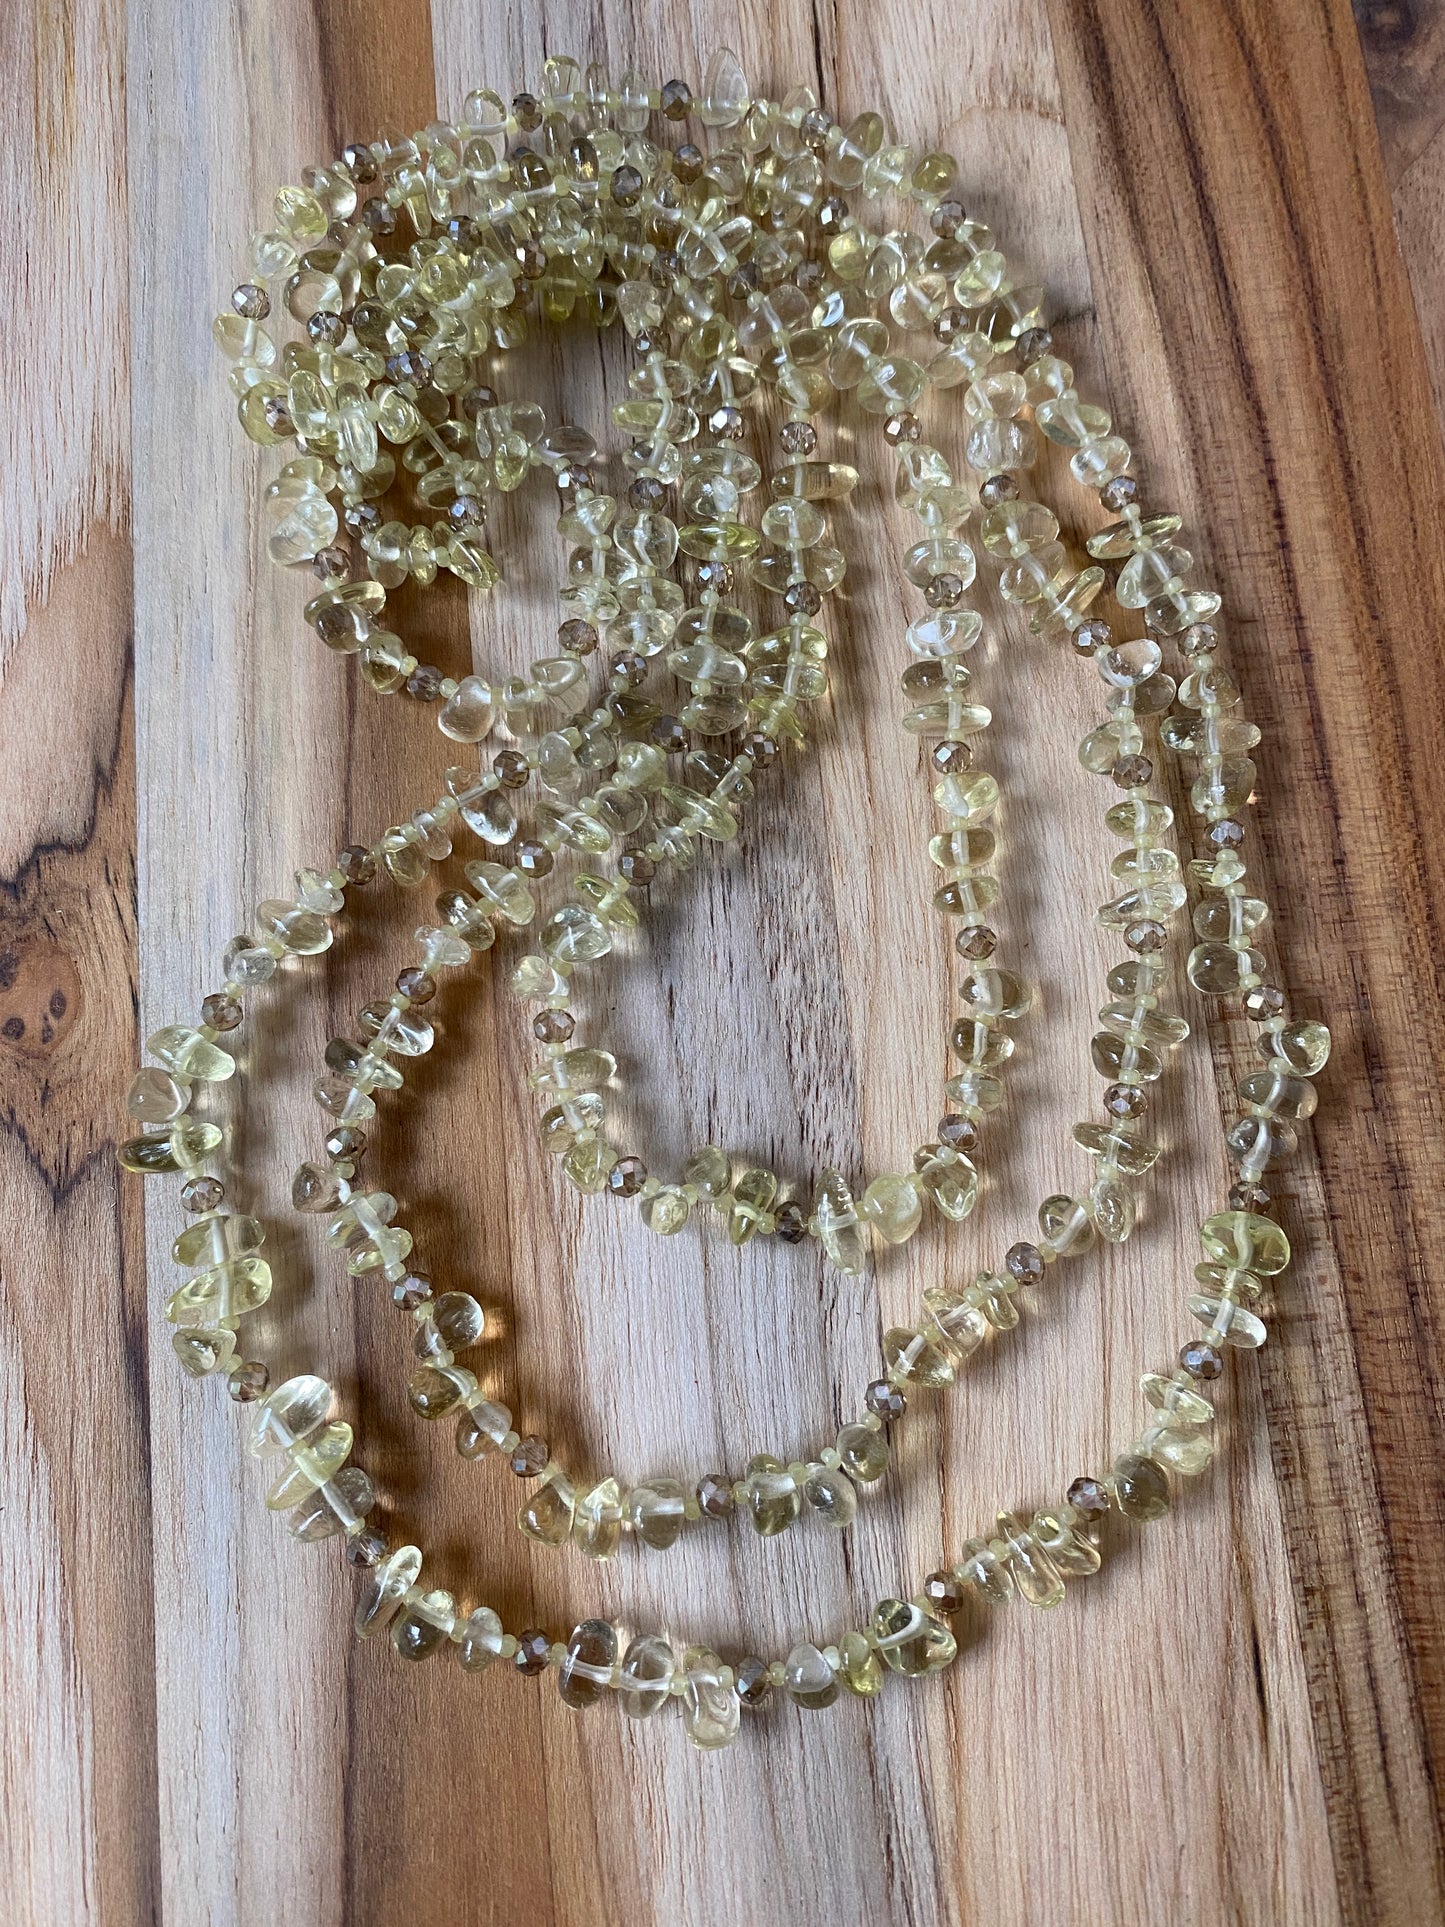 60" Extra Long Wraparound Lemon Quartz Tumble Chip Bead Necklace with Crystal Beads